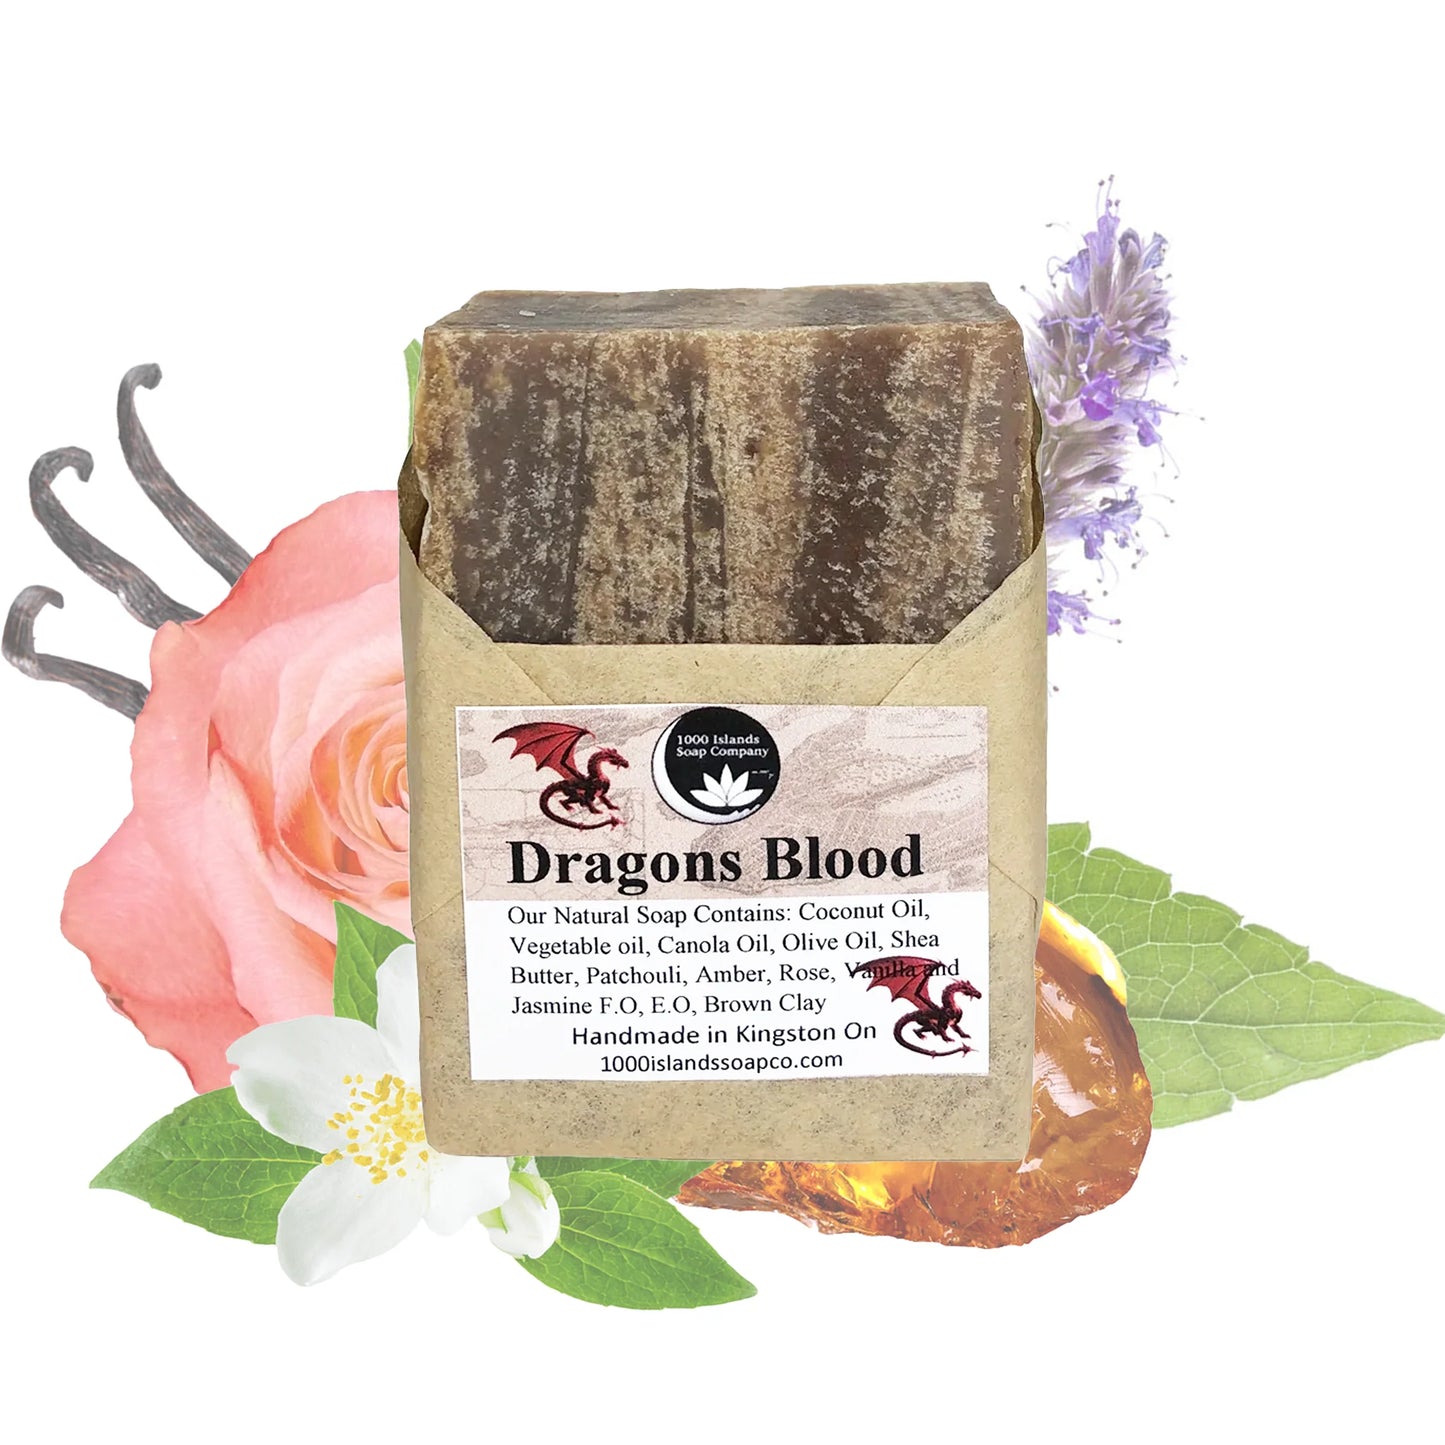 Dragons Blood Natural Soap Bar